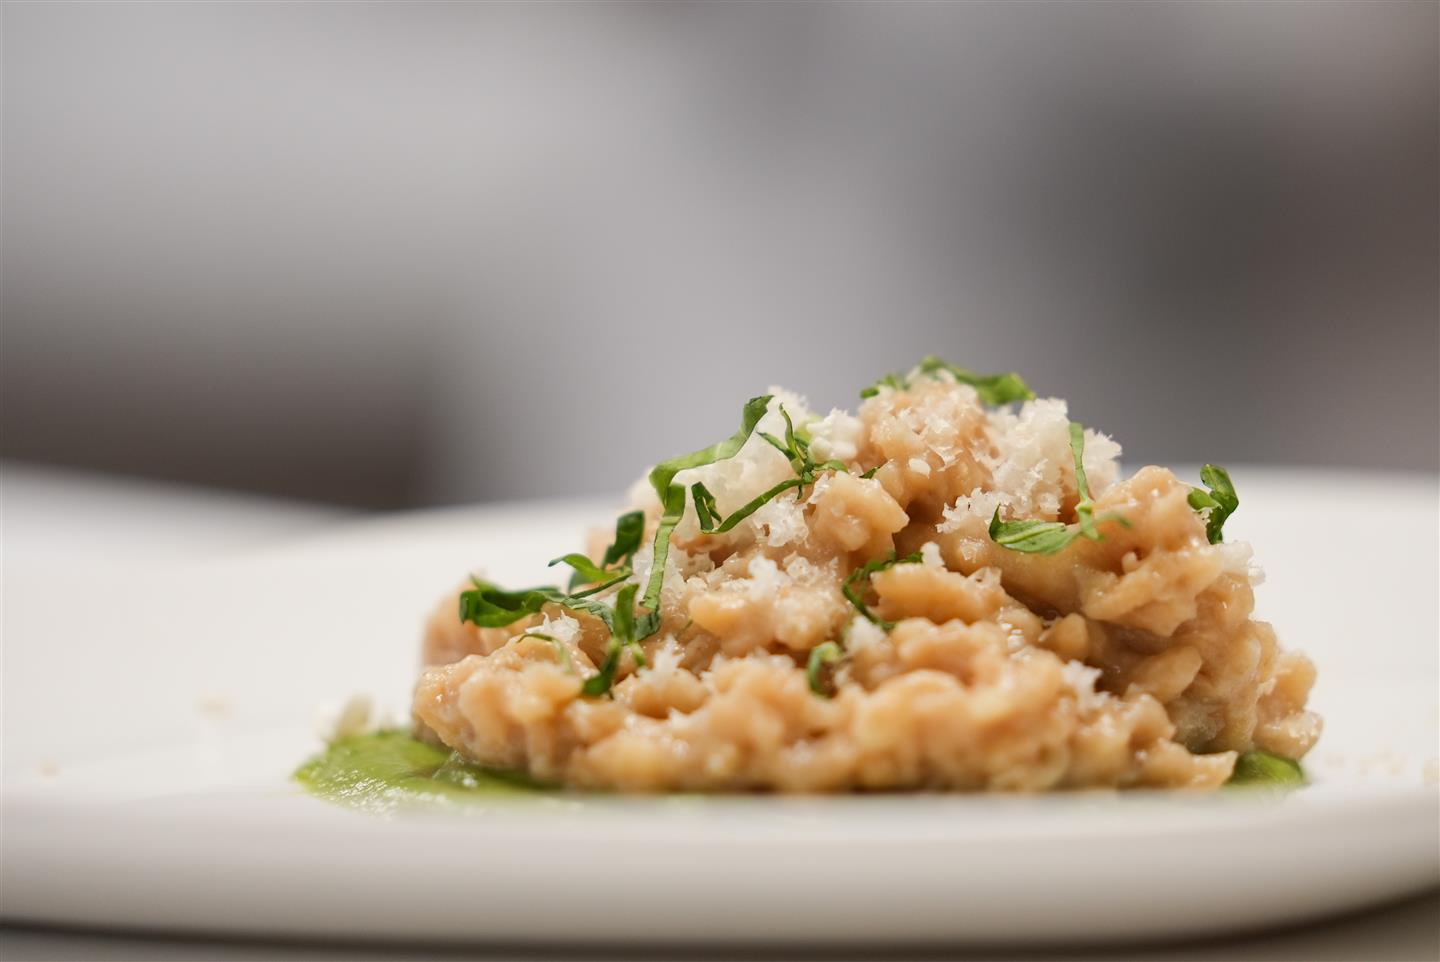 Fotografía de: El CETT presenta un arroz meloso de coliflor en la propuesta de otoño del Menú de las Estaciones | CETT